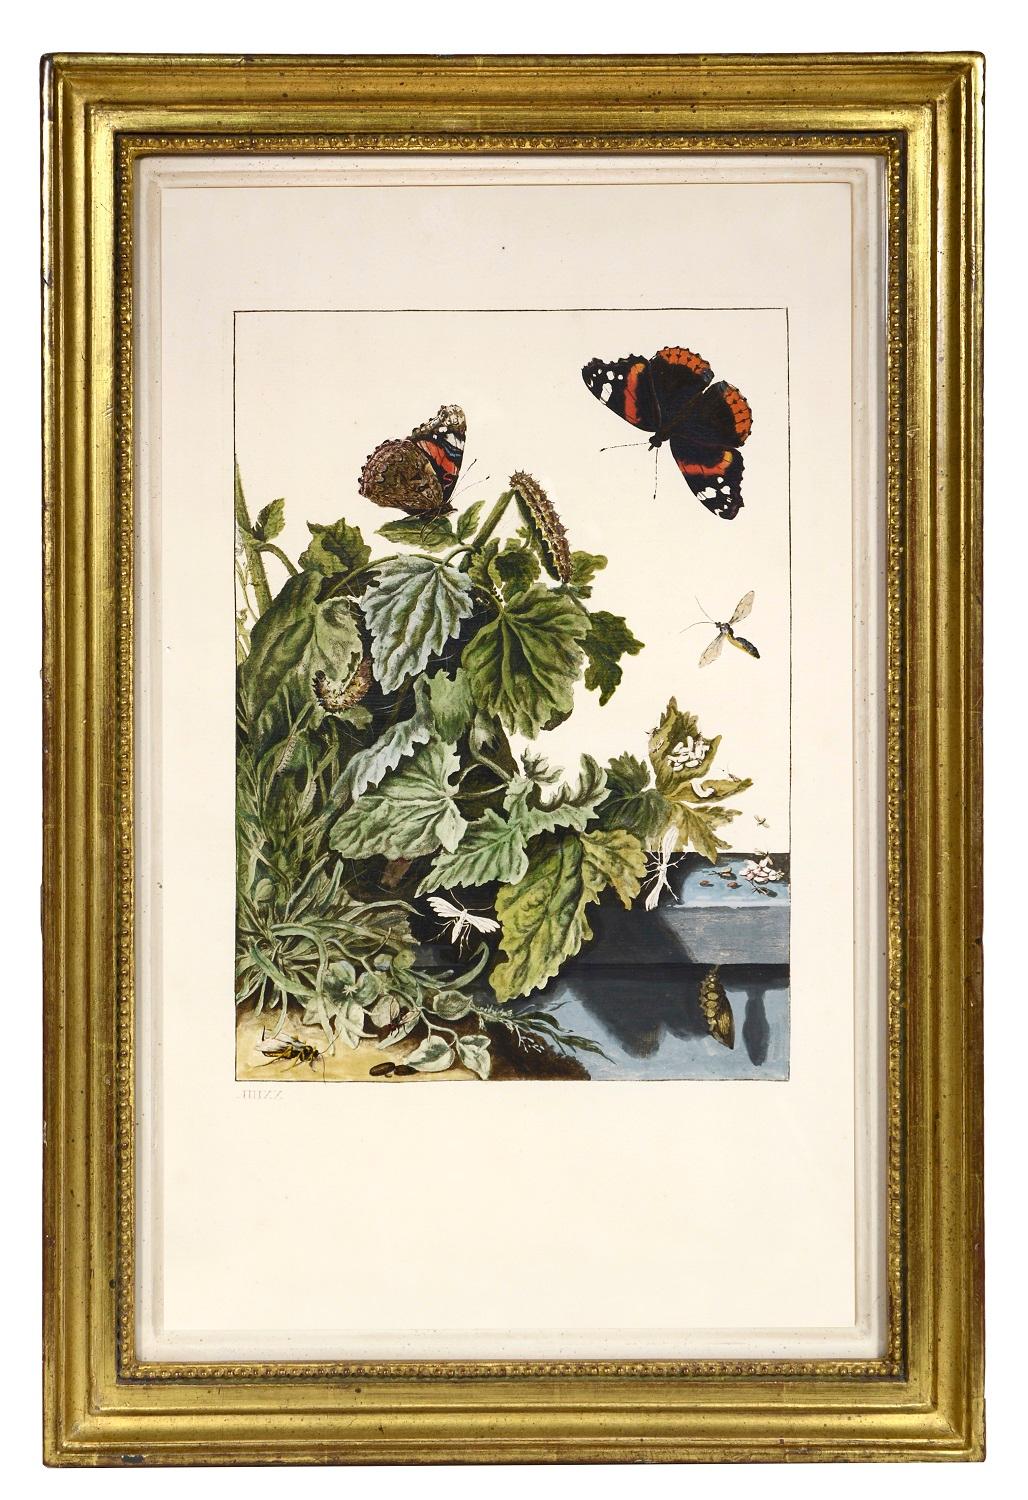 Groupe de six insectes.    - Print de Jacob L'Admiral